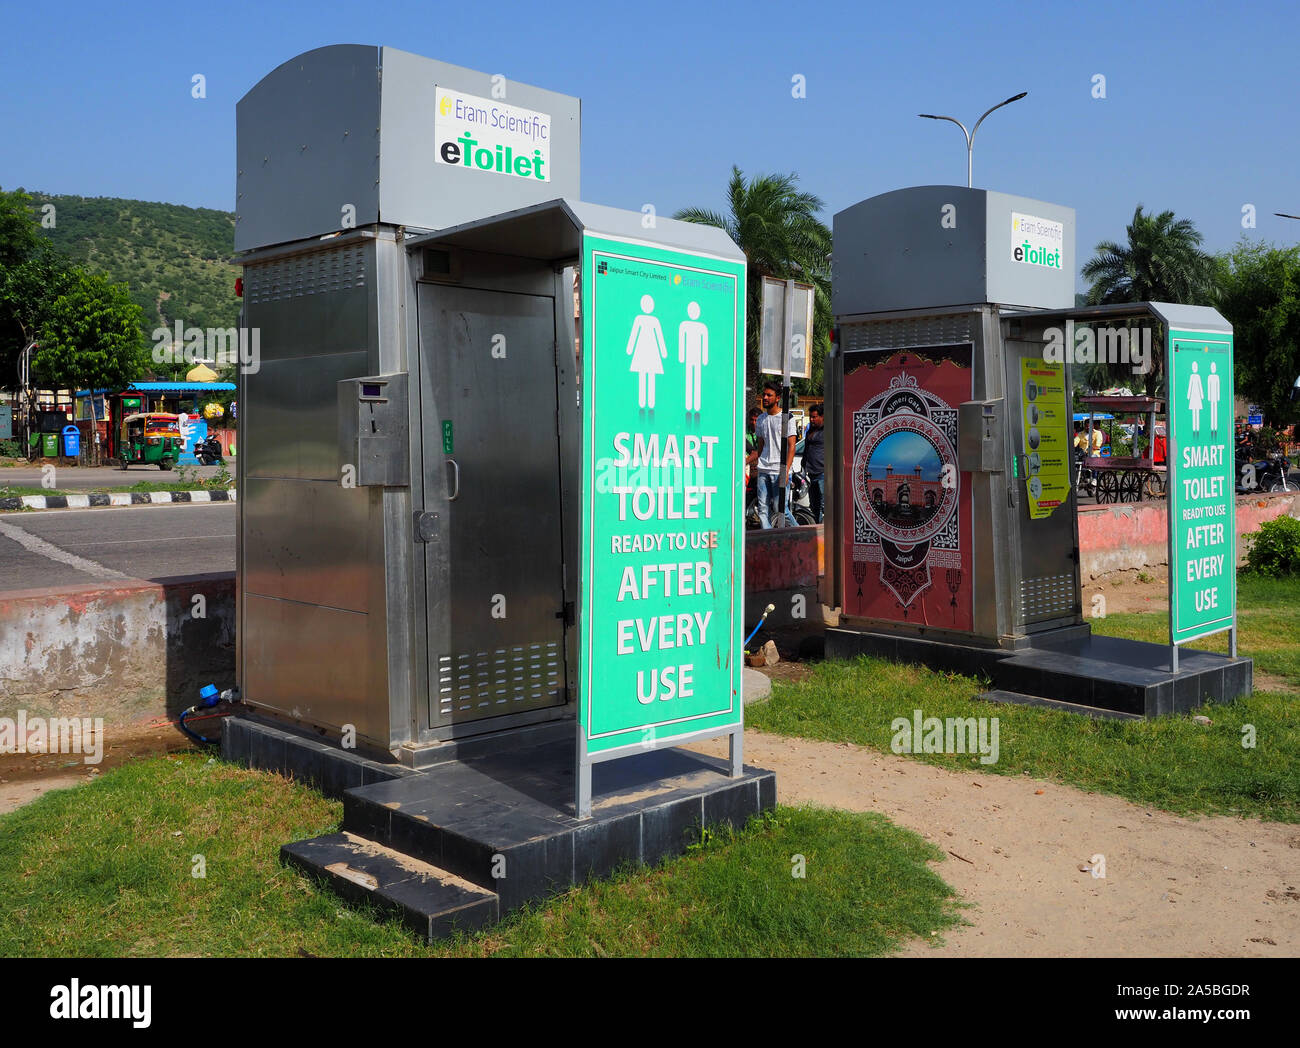 Eram wissenschaftliche Wc. Die eToilet ist eine Vorgefertigte öffentliche Toilette, Indien Stockfoto